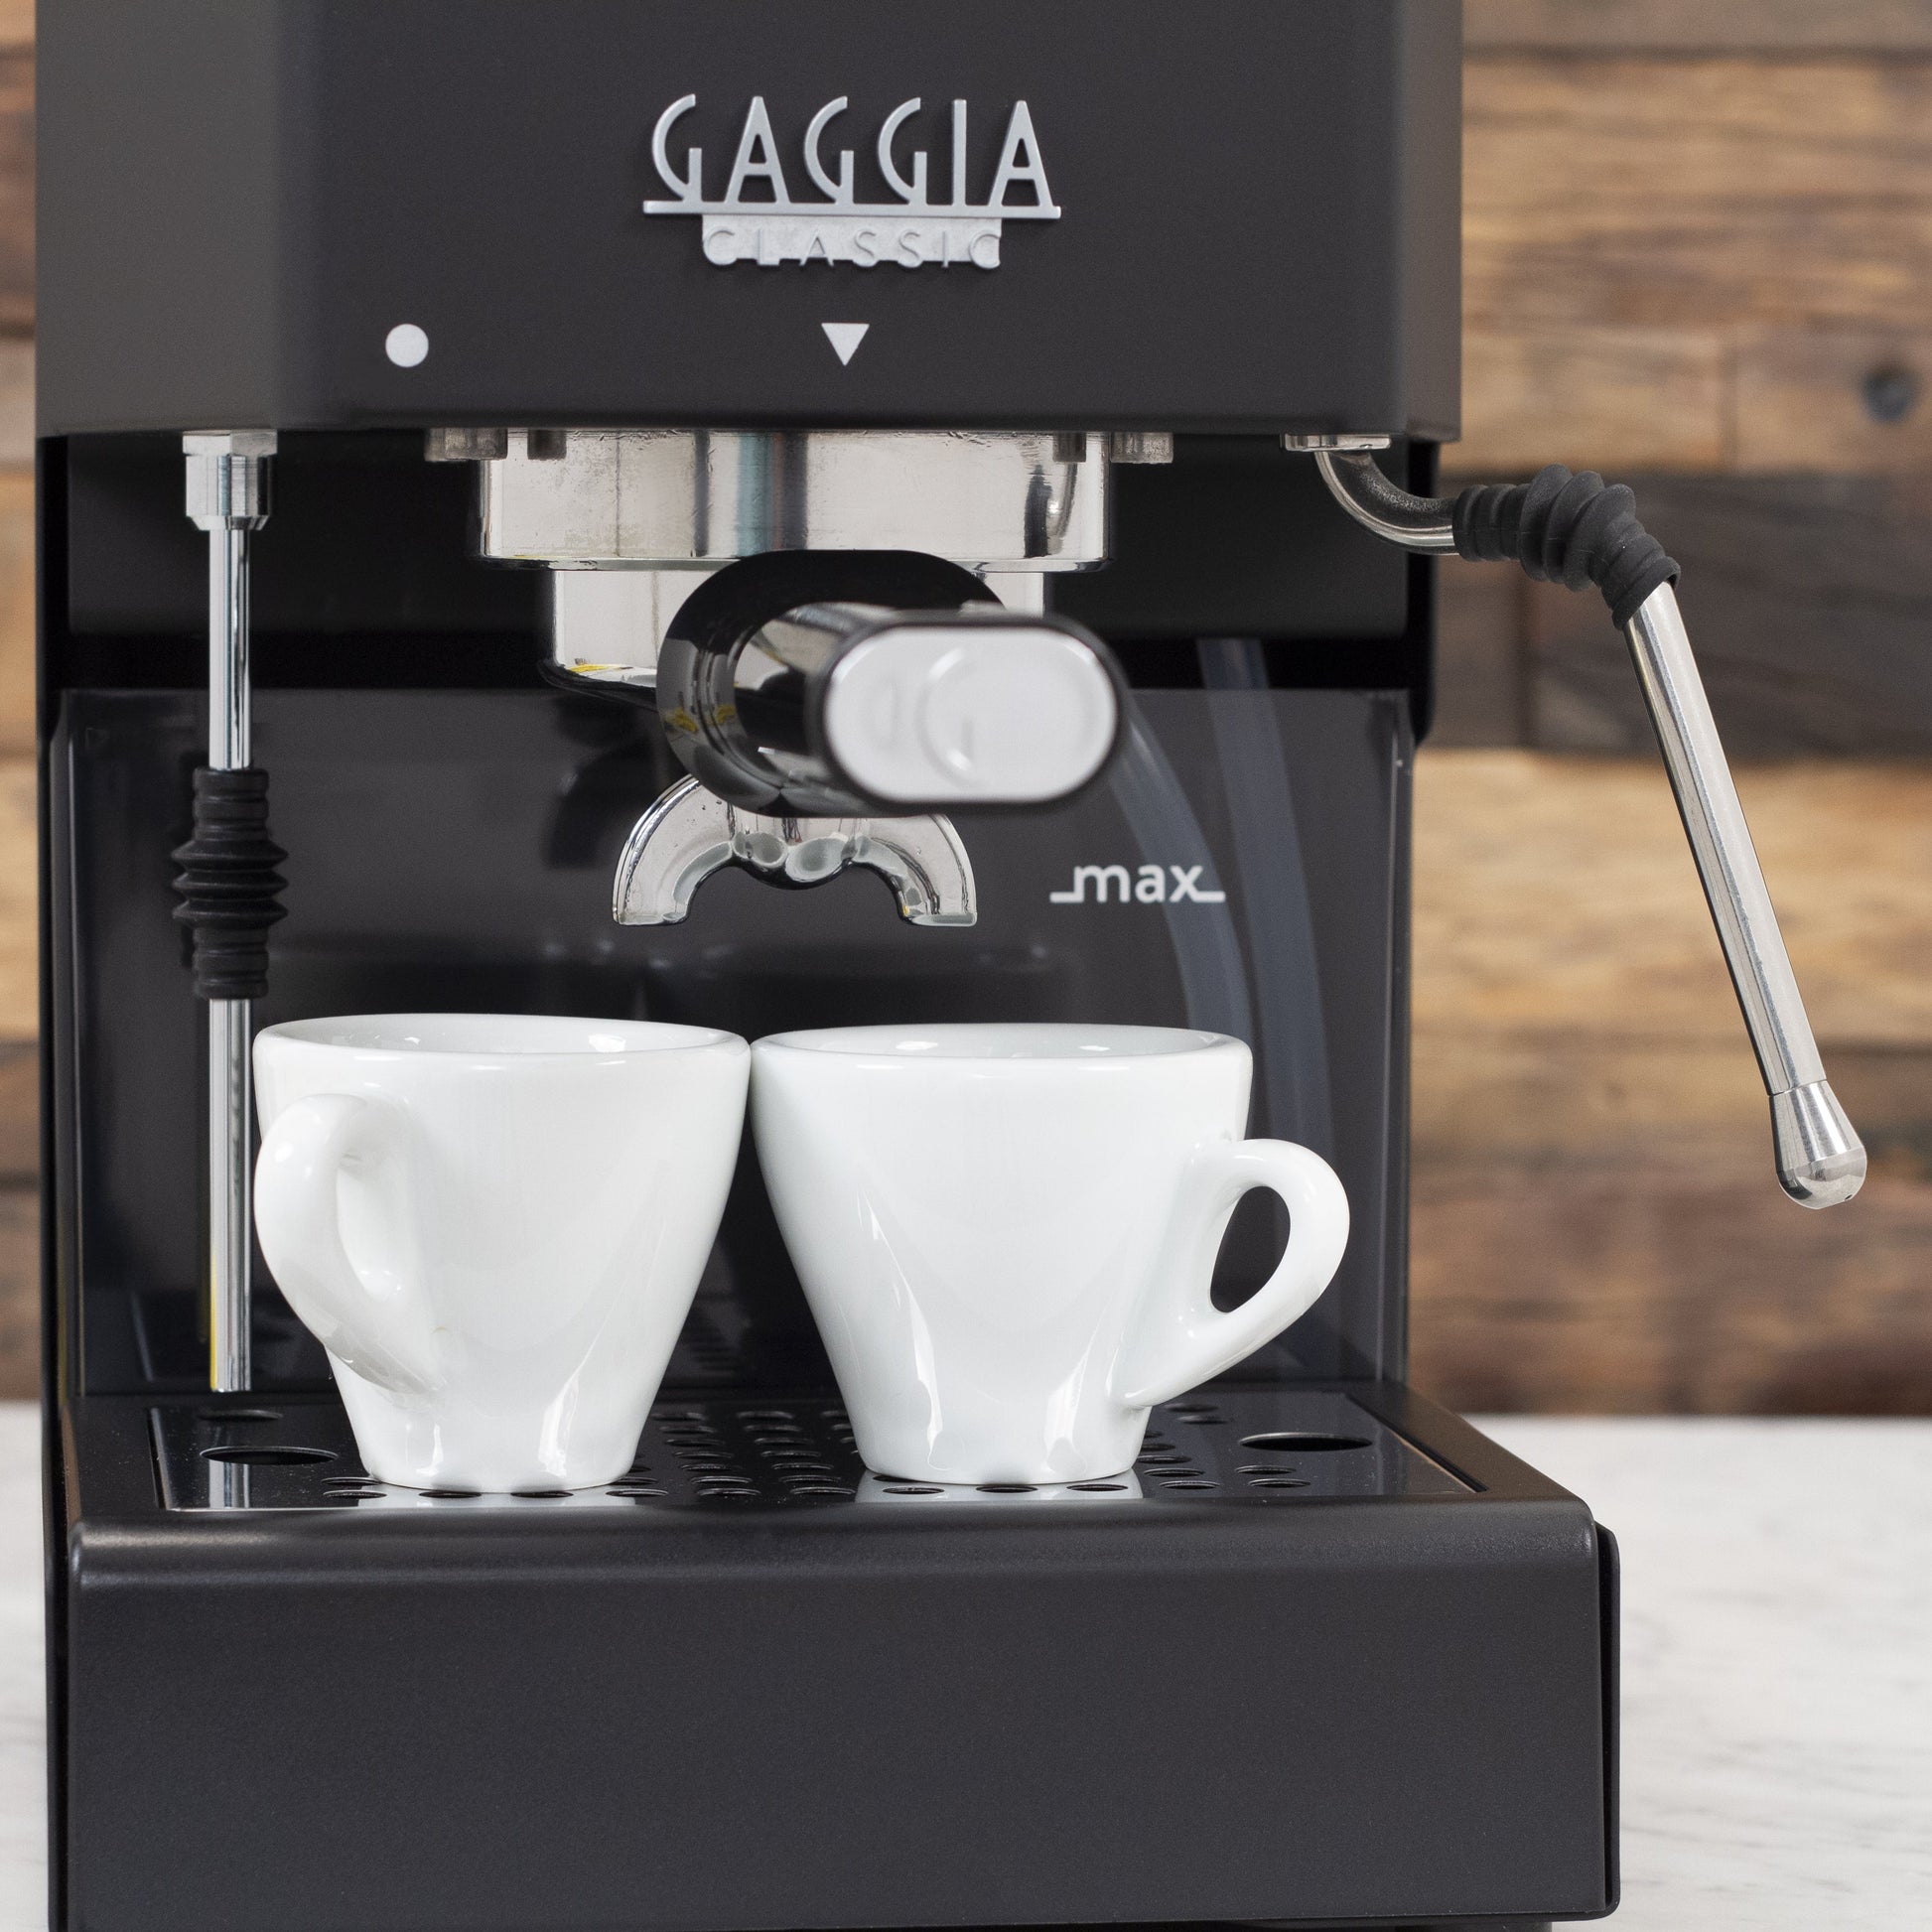 The Gaggia Classic Evo Pro espresso machine is 19% off